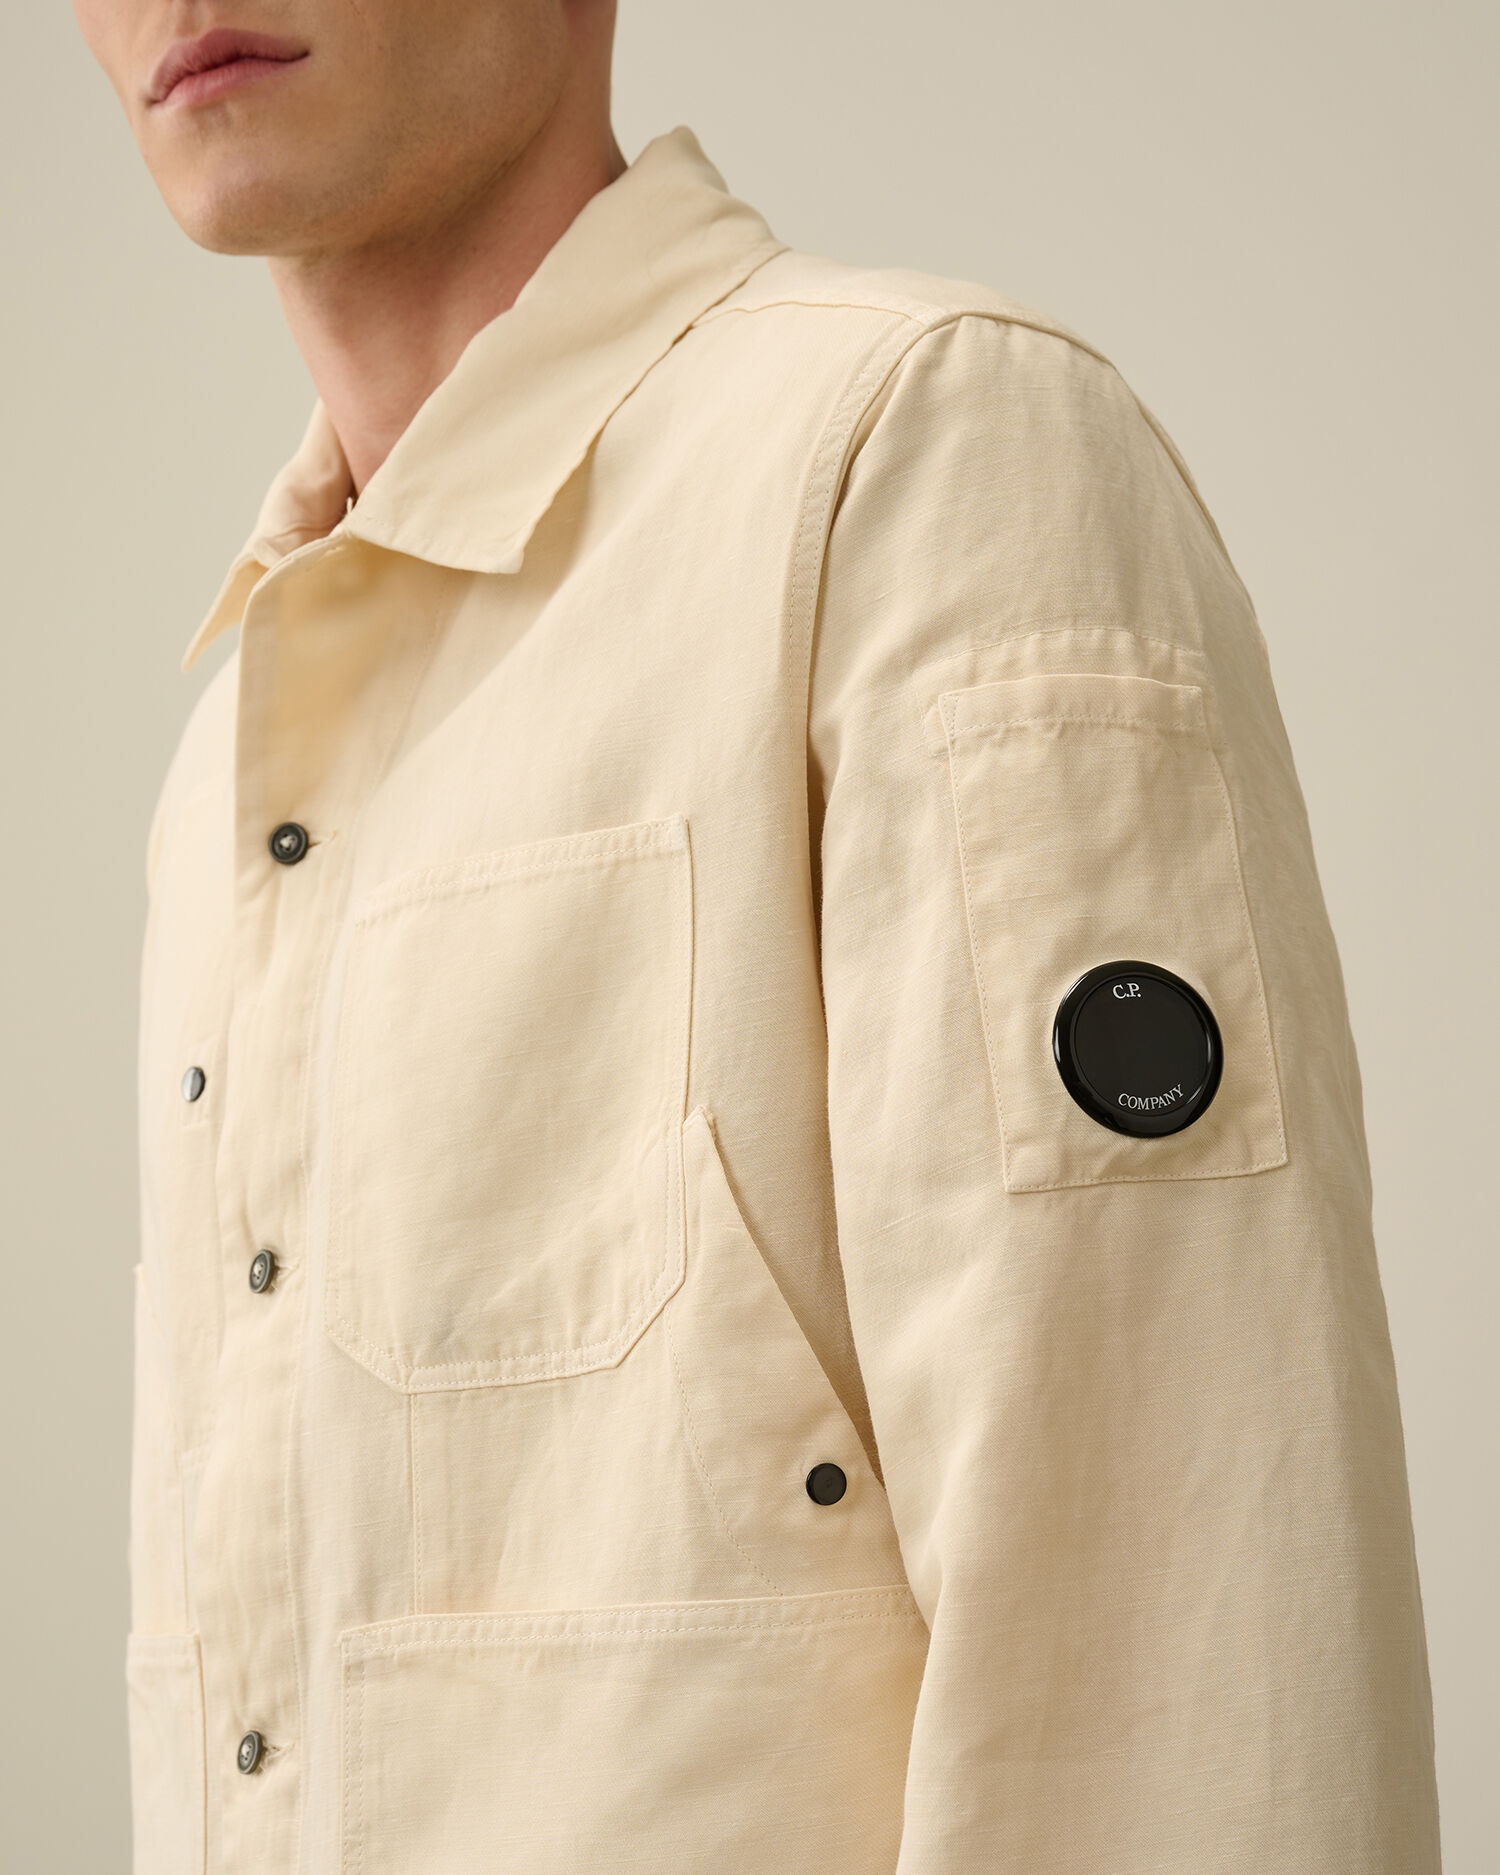 Cotton/Linen Overshirt - 4